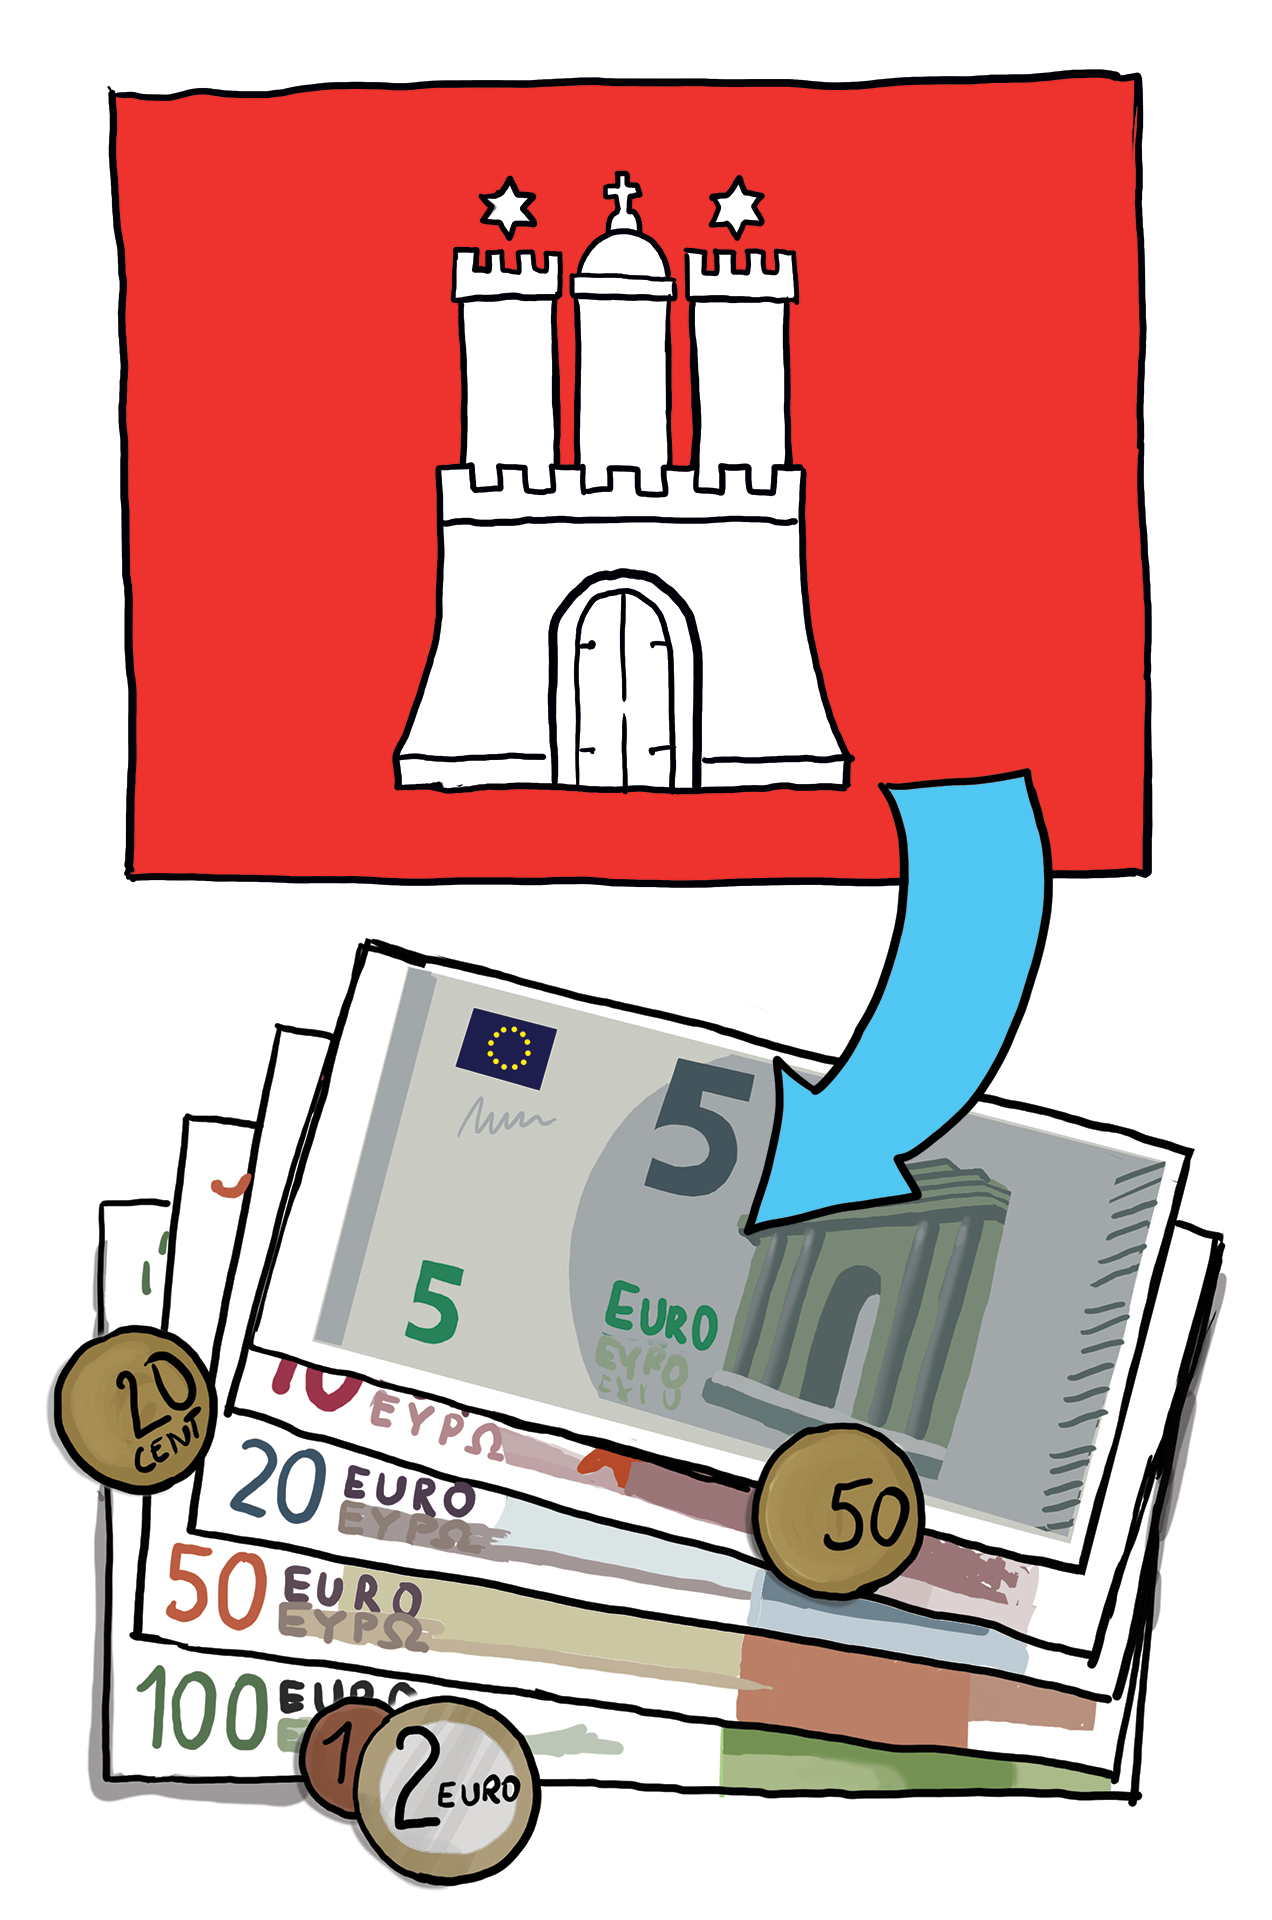 Die Fahne von Hamburg. Darunter sind Geldscheine. Fahne und Geld sind mit einem Pfeil verbunden.